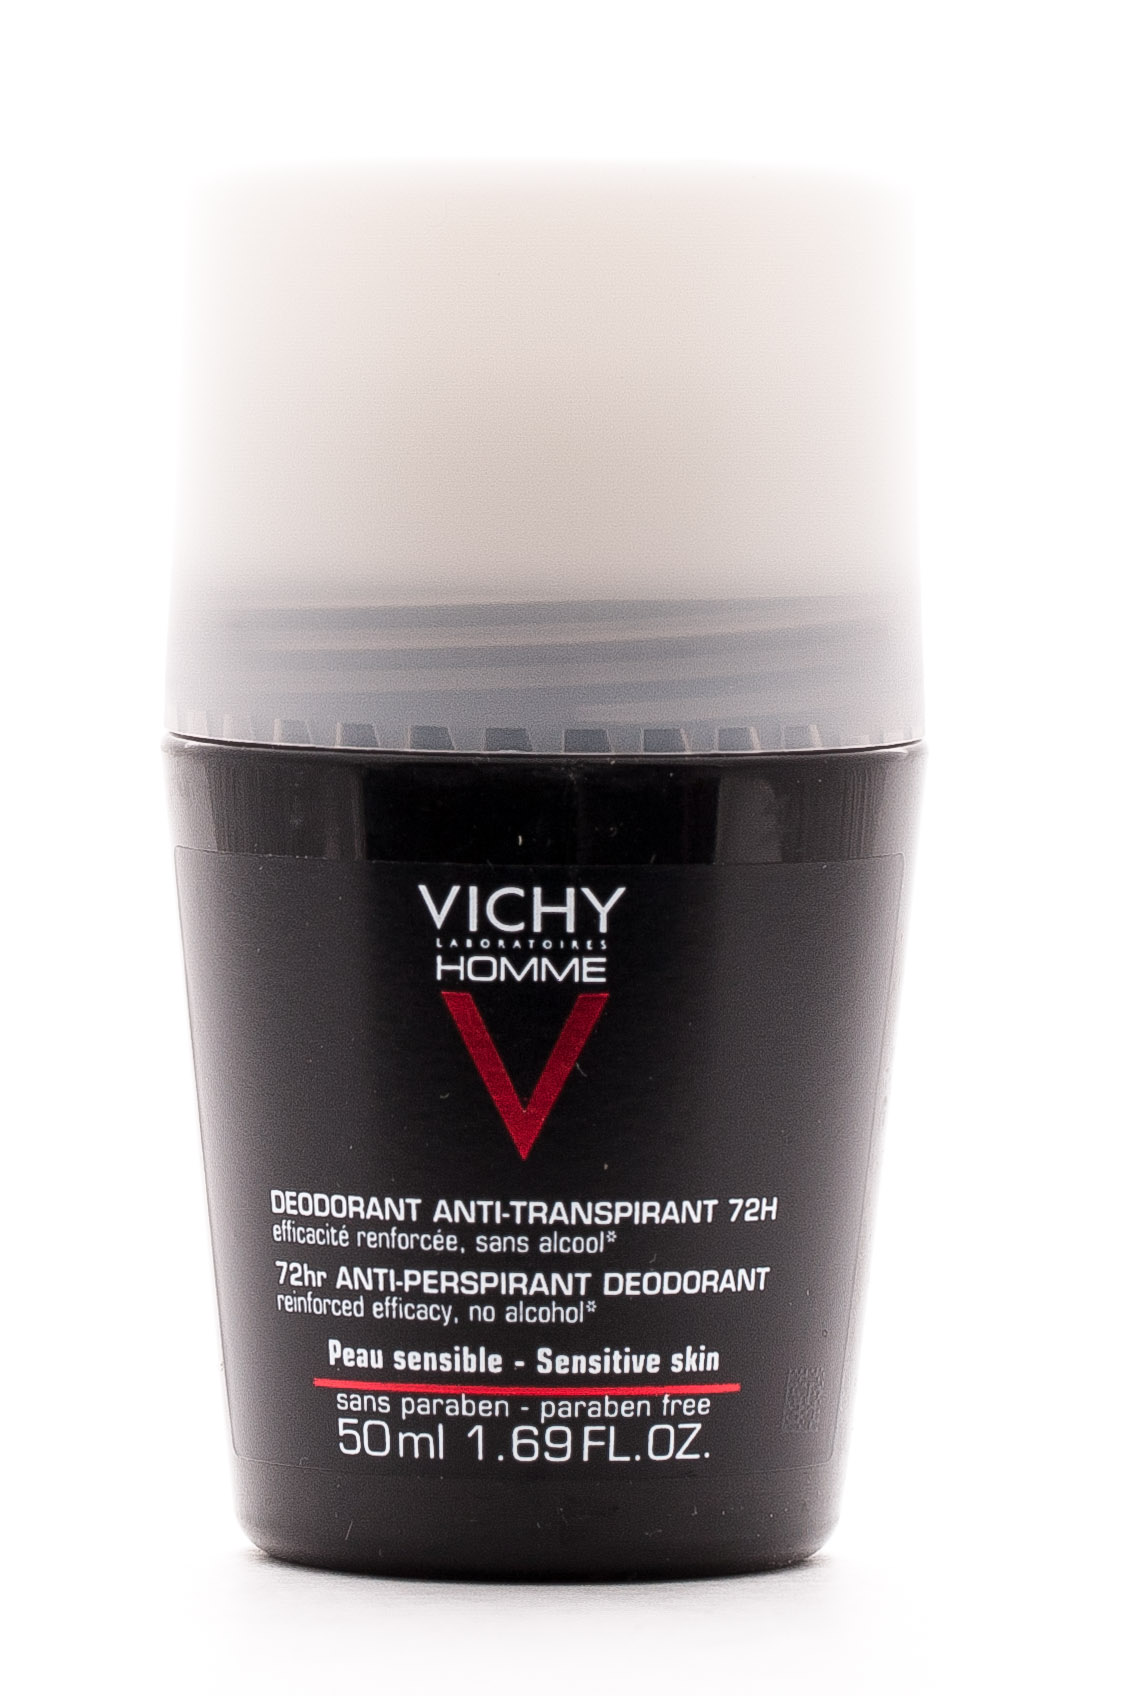 Vichy Homme дезодорант 72ч против избыточного потоотделения, 50 мл